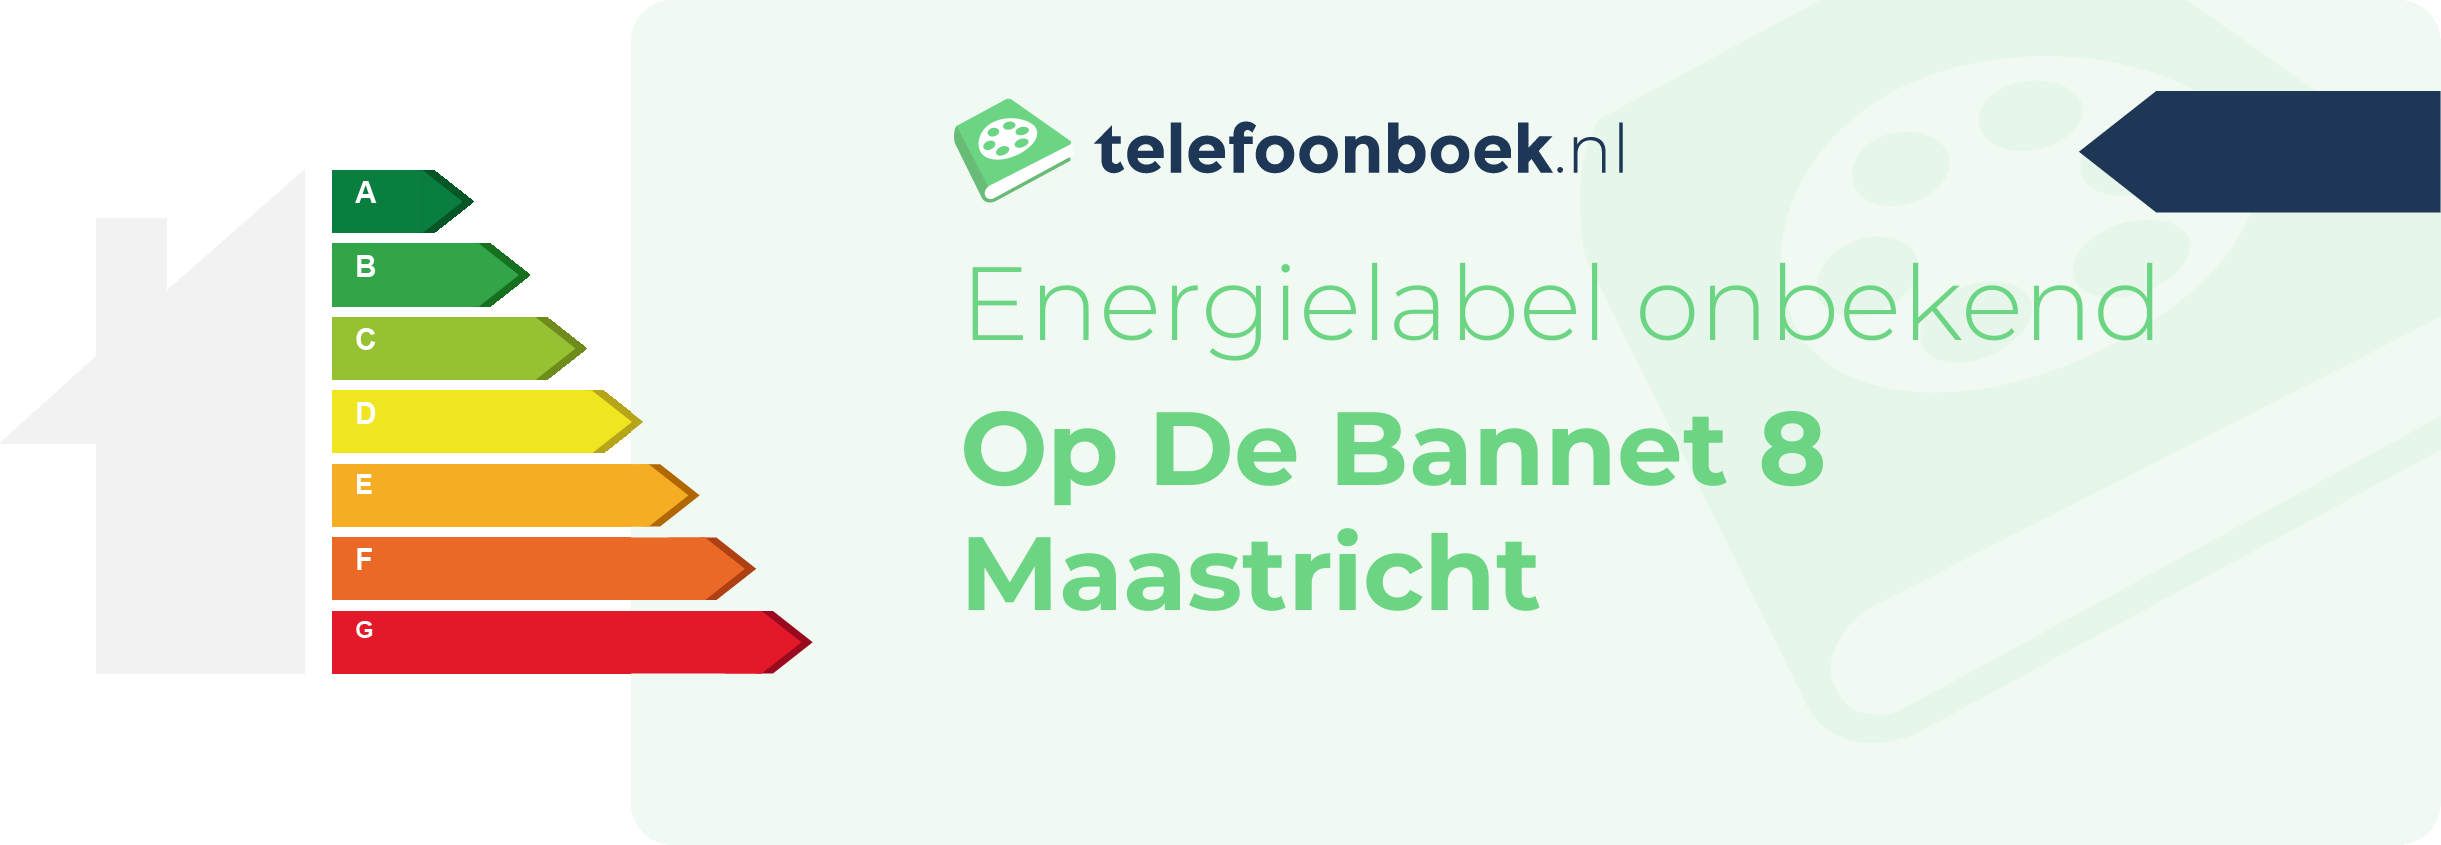 Energielabel Op De Bannet 8 Maastricht